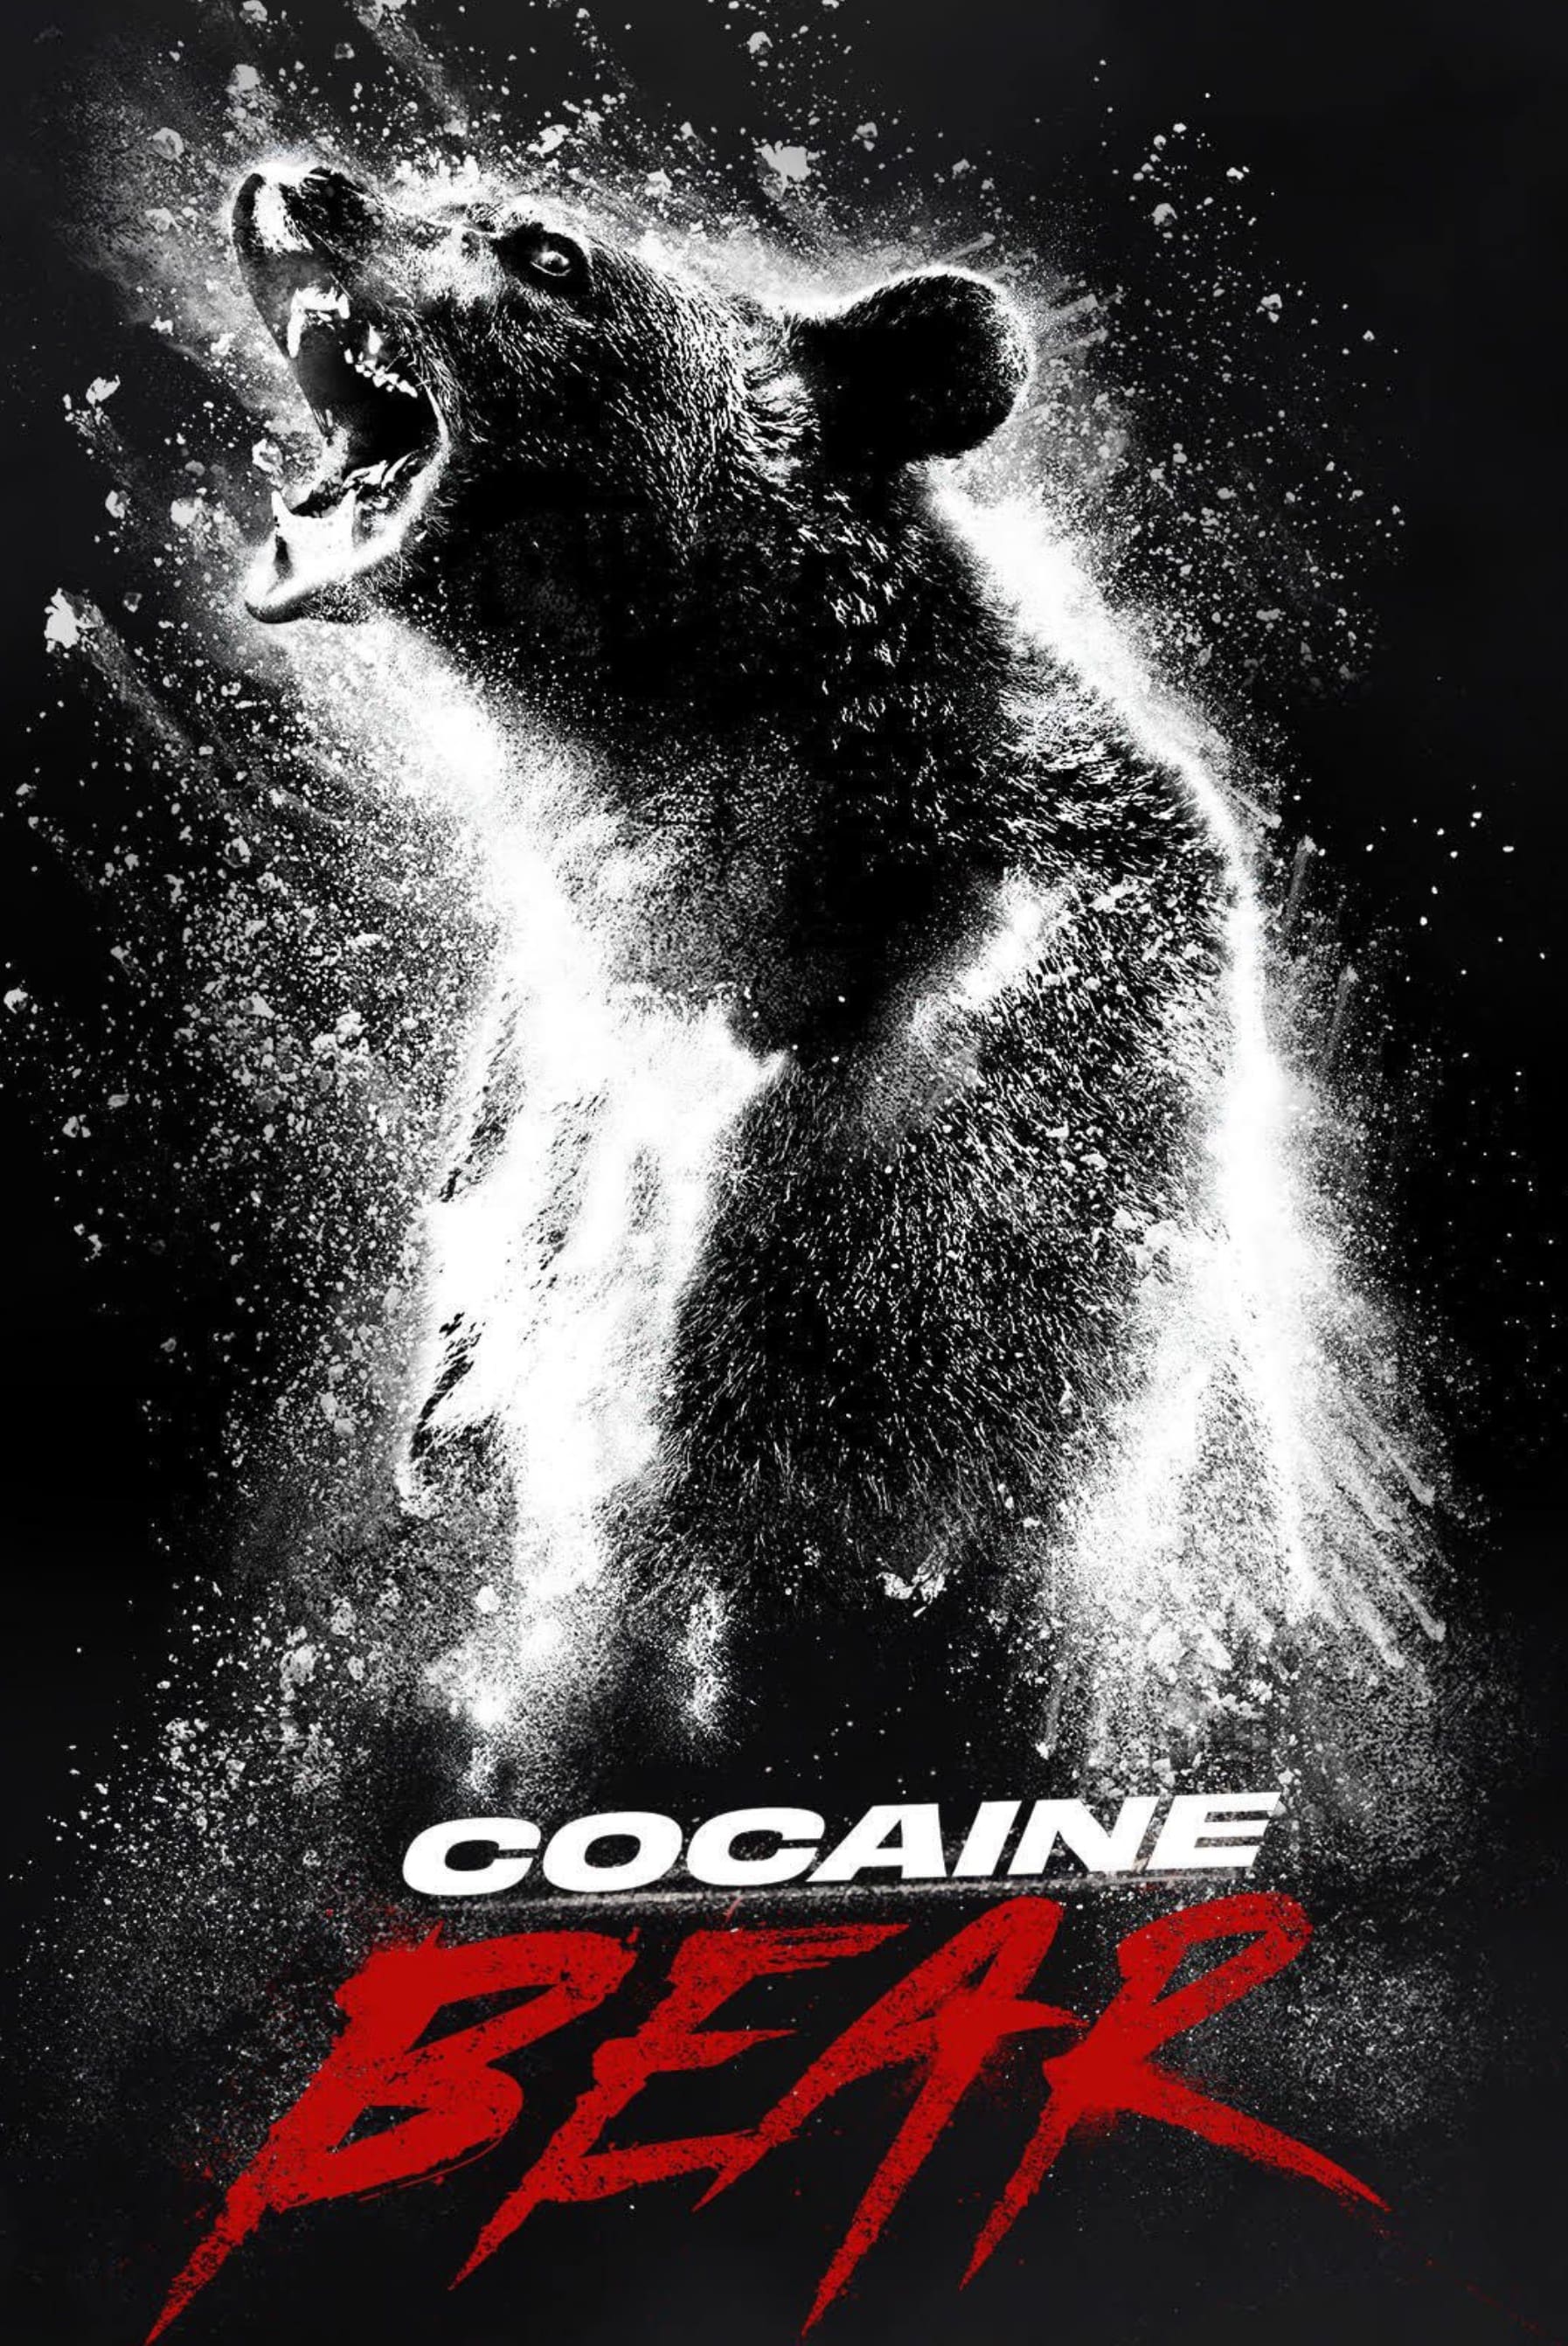 Cocain Bear